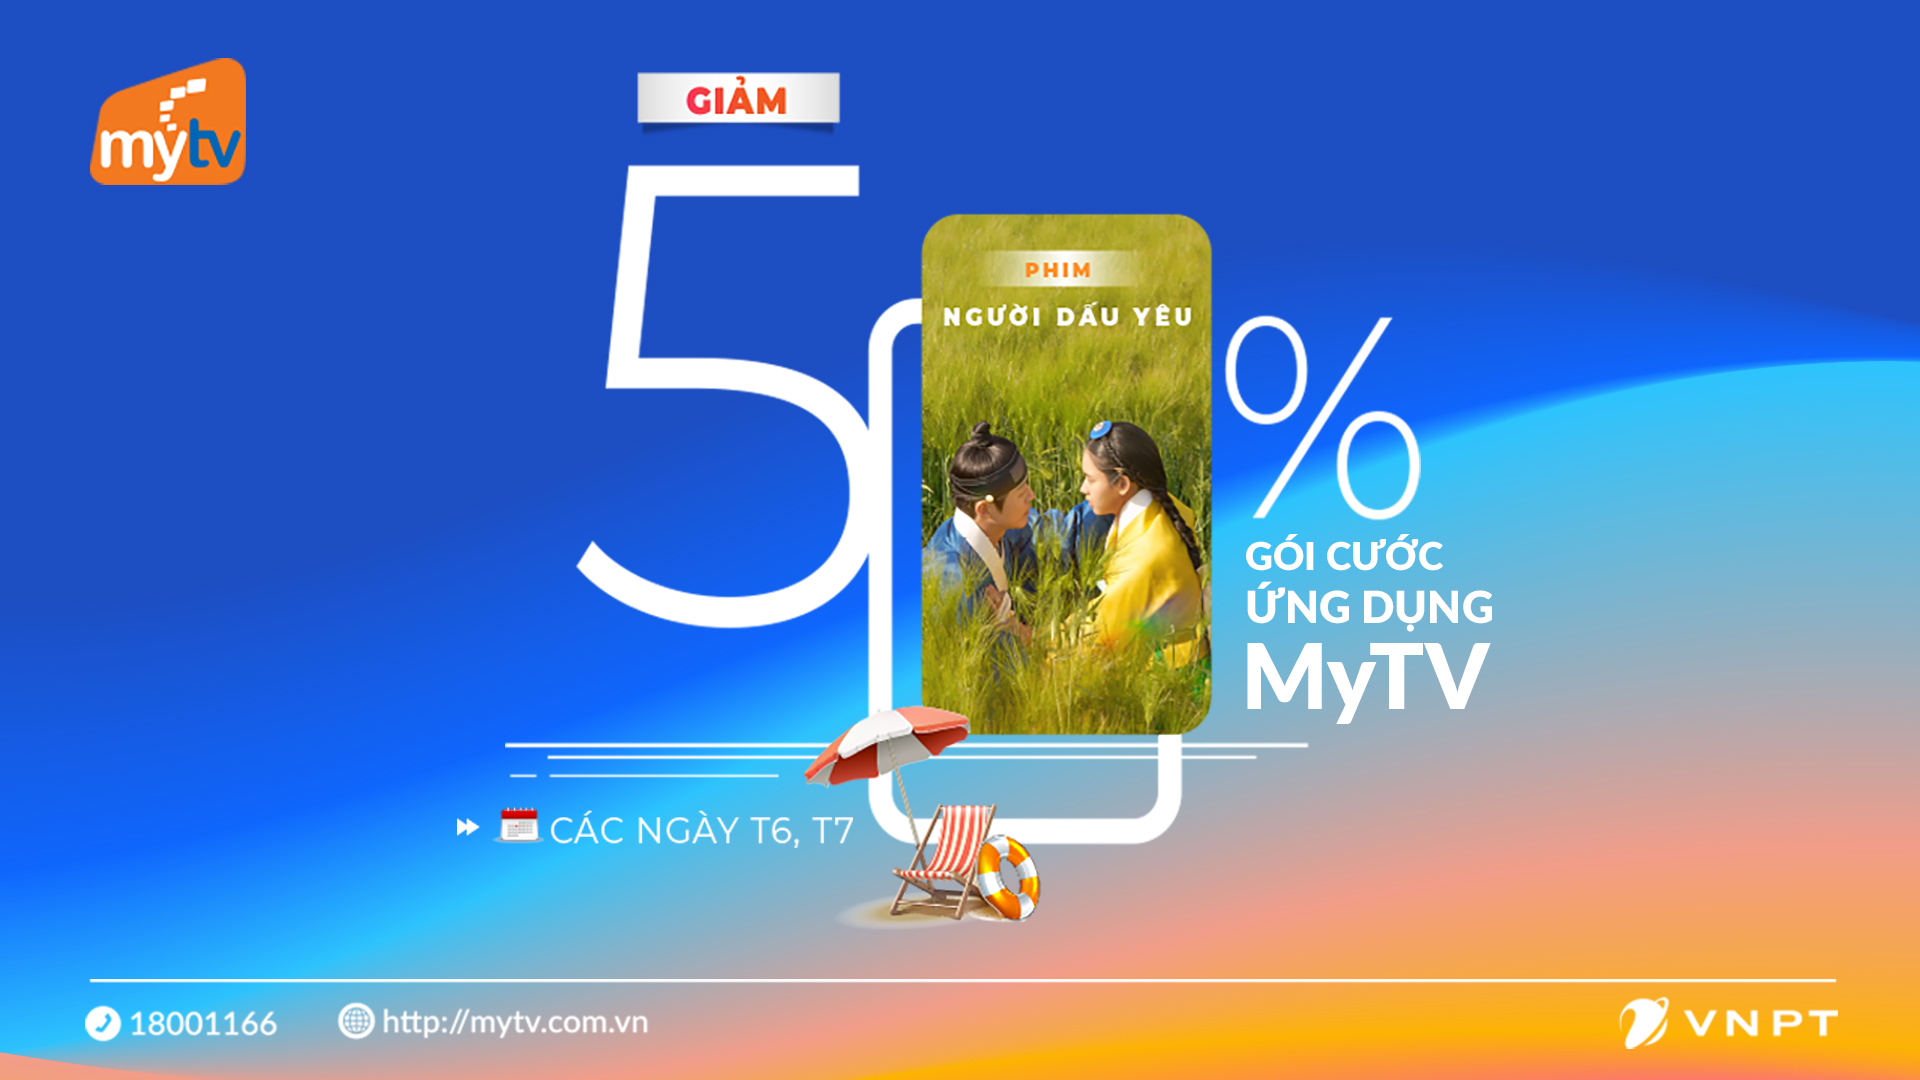 Ưu đãi hot: Giảm 50% gói cước Ứng dụng MyTV trong tháng 9